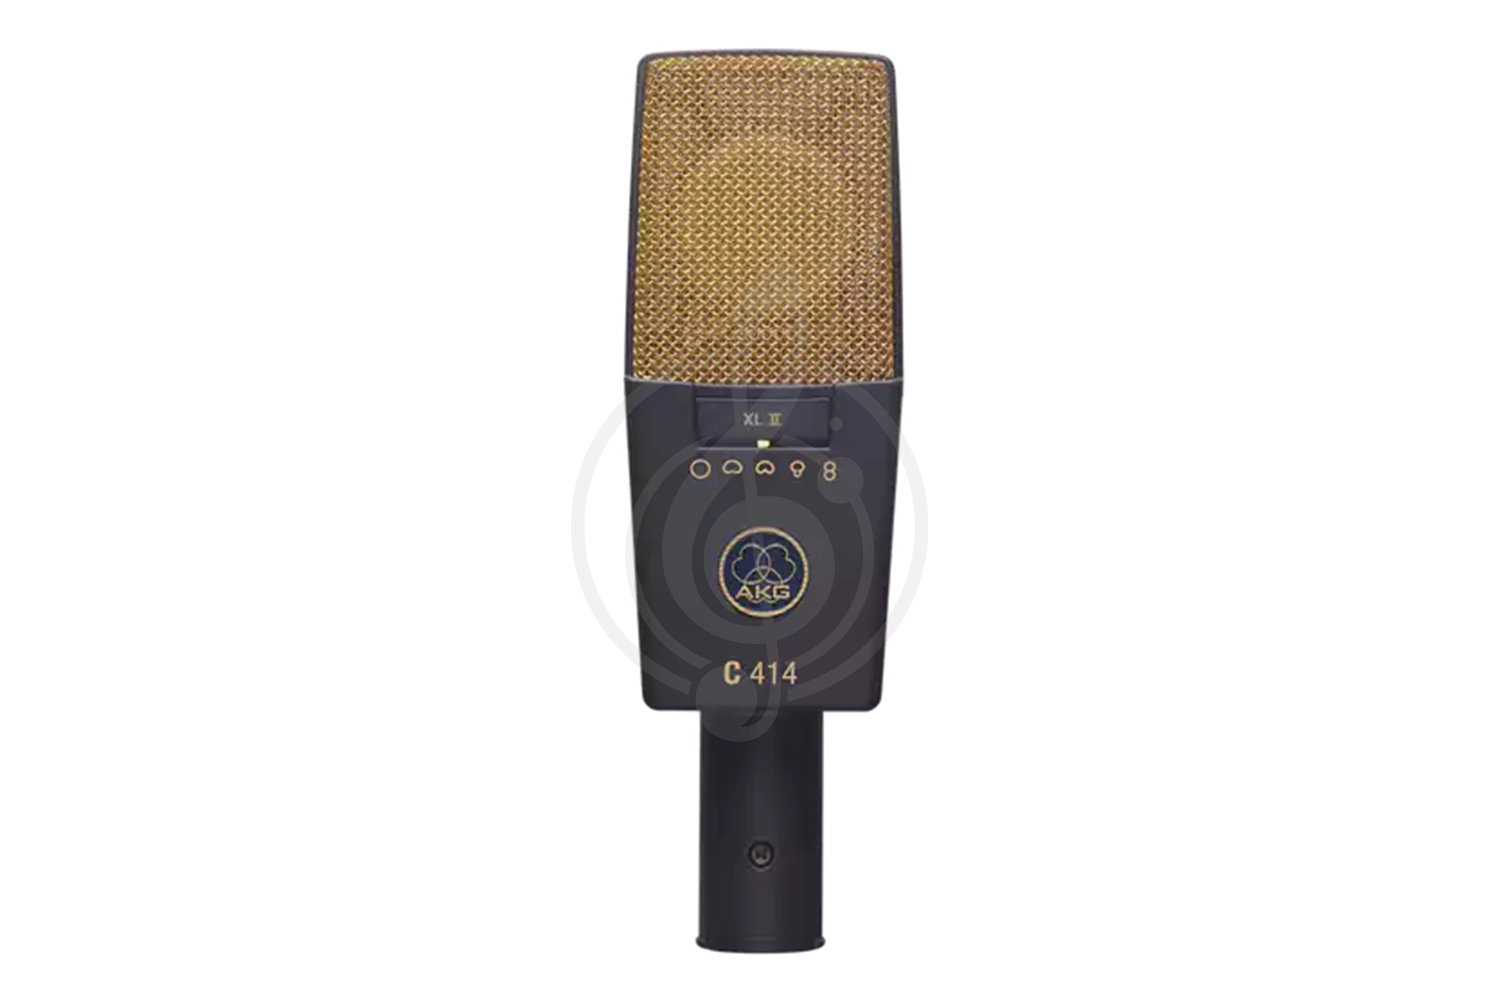 Конденсаторный студийный микрофон Конденсаторные студийные микрофоны AKG AKG C414XLII - конденсаторный студийный микрофон C414XLII - фото 1